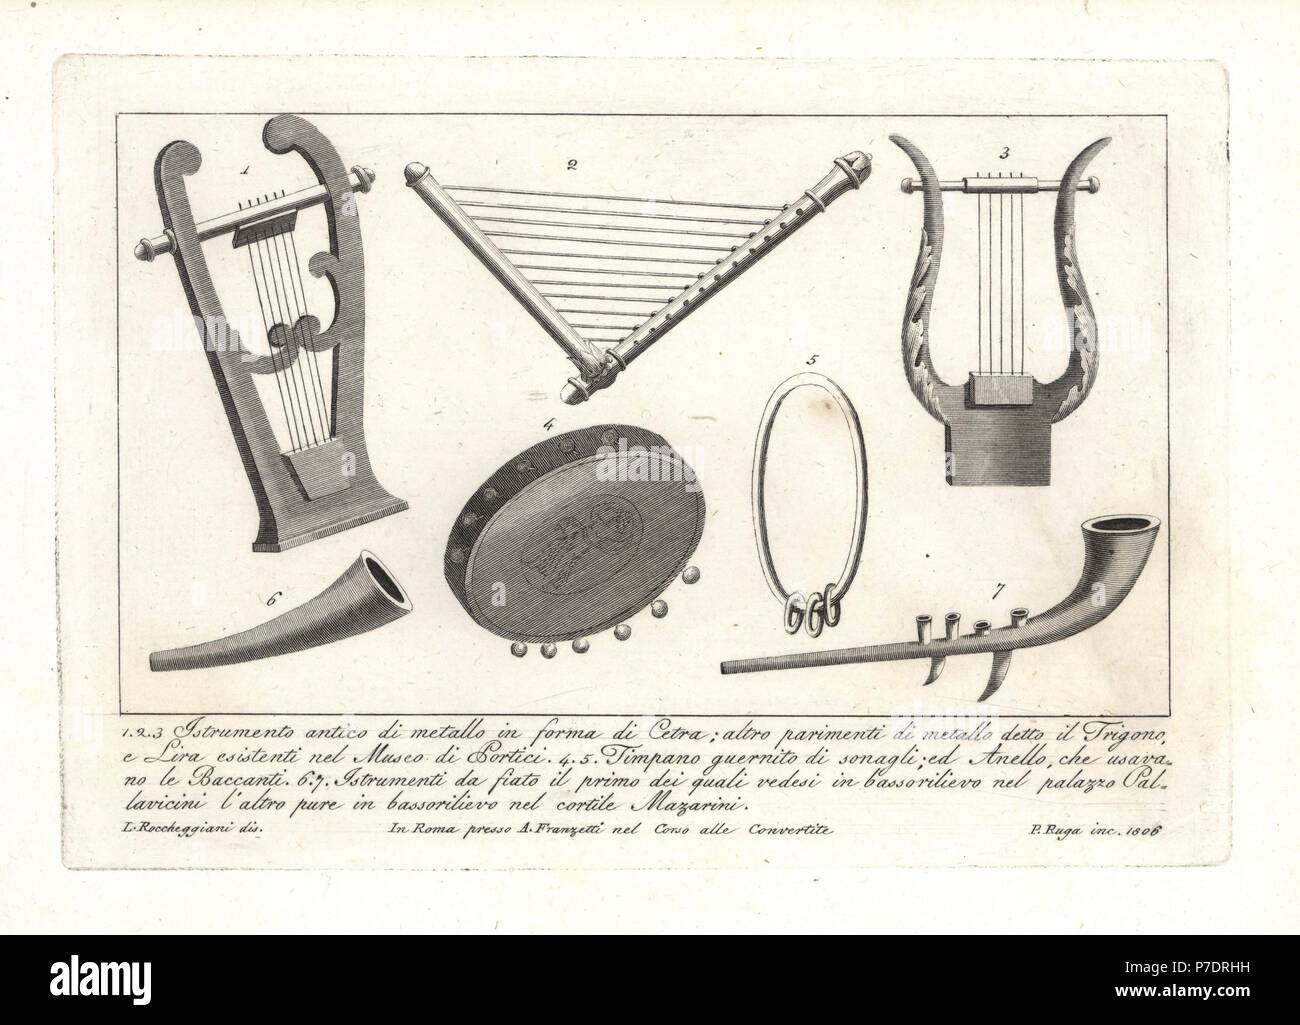 Instrumentos musicales antiguos: metal lira o Cithara 1, metal Trigono 2, metal y lira en el Museo Portici 3, pandereta Timpano con campanas 4, anillo de percusión utilizados por las Bacantes